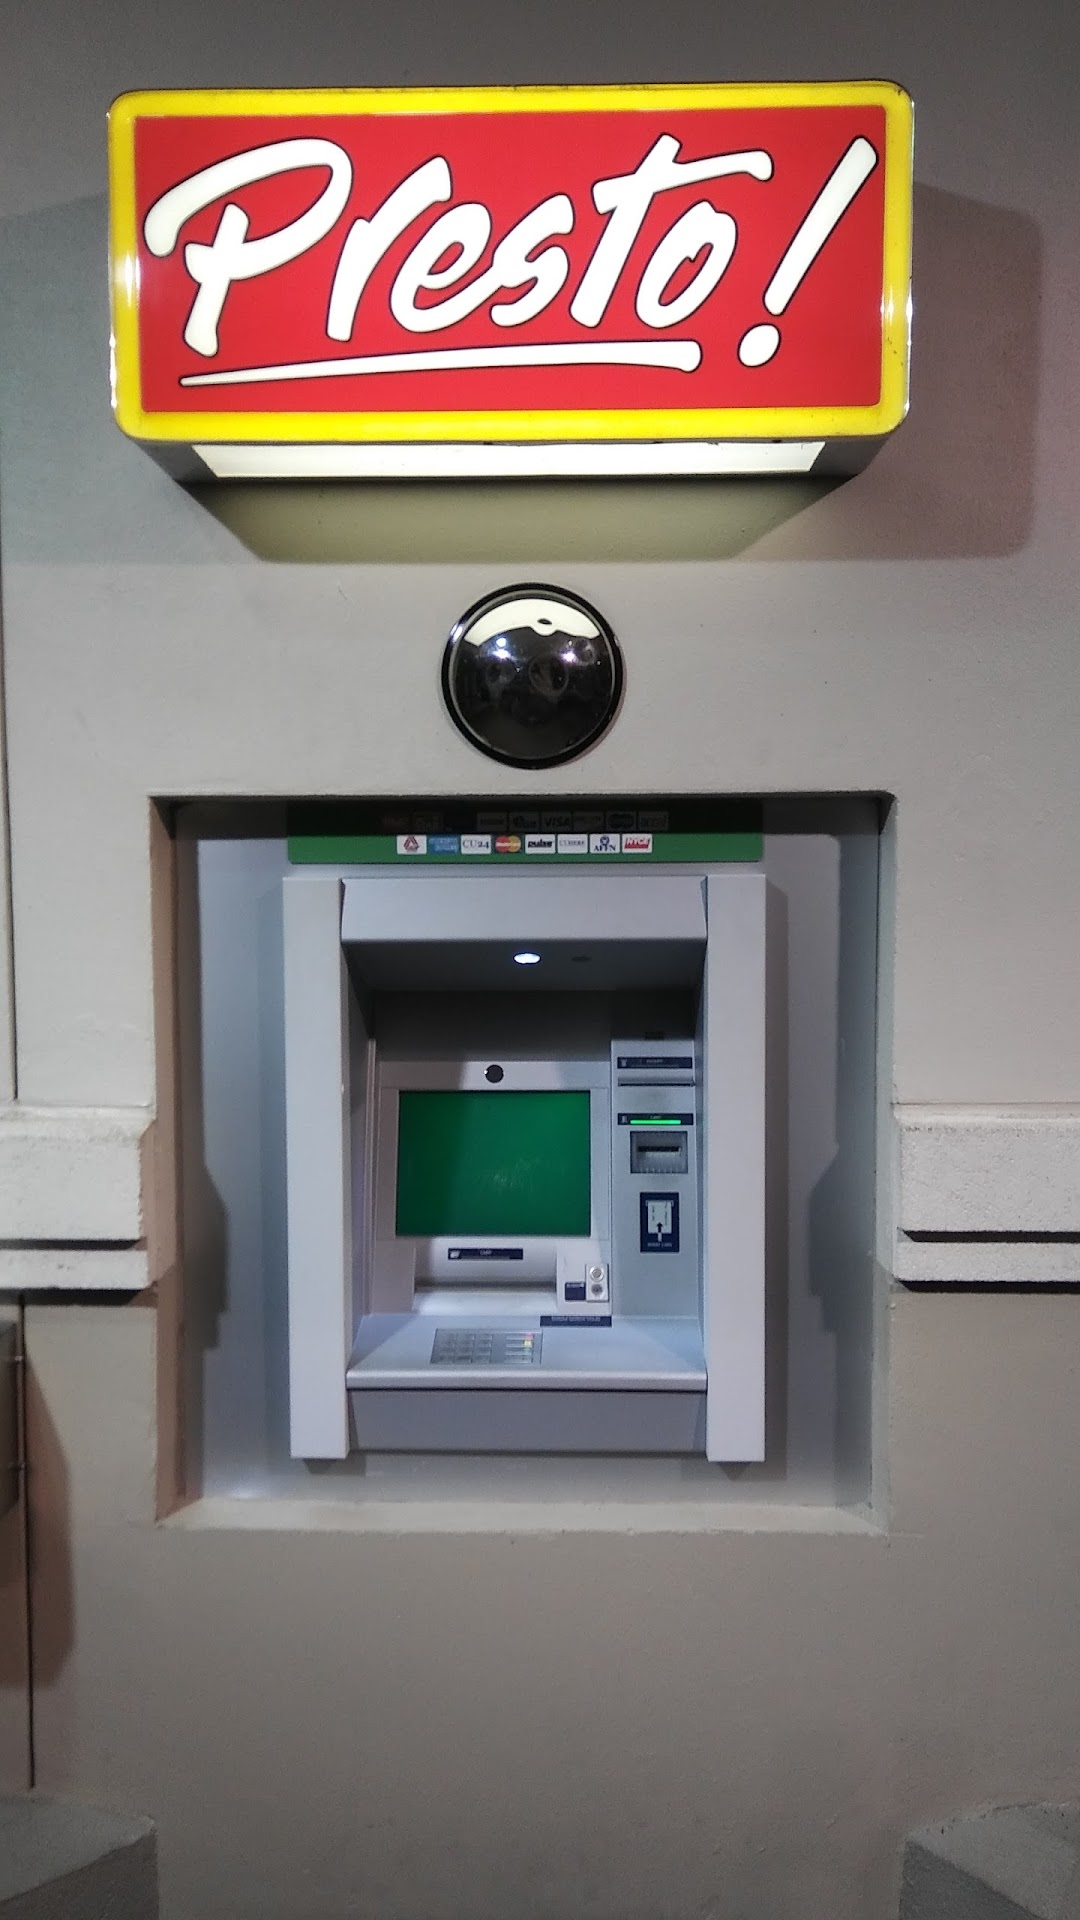 Presto ATM at Publix